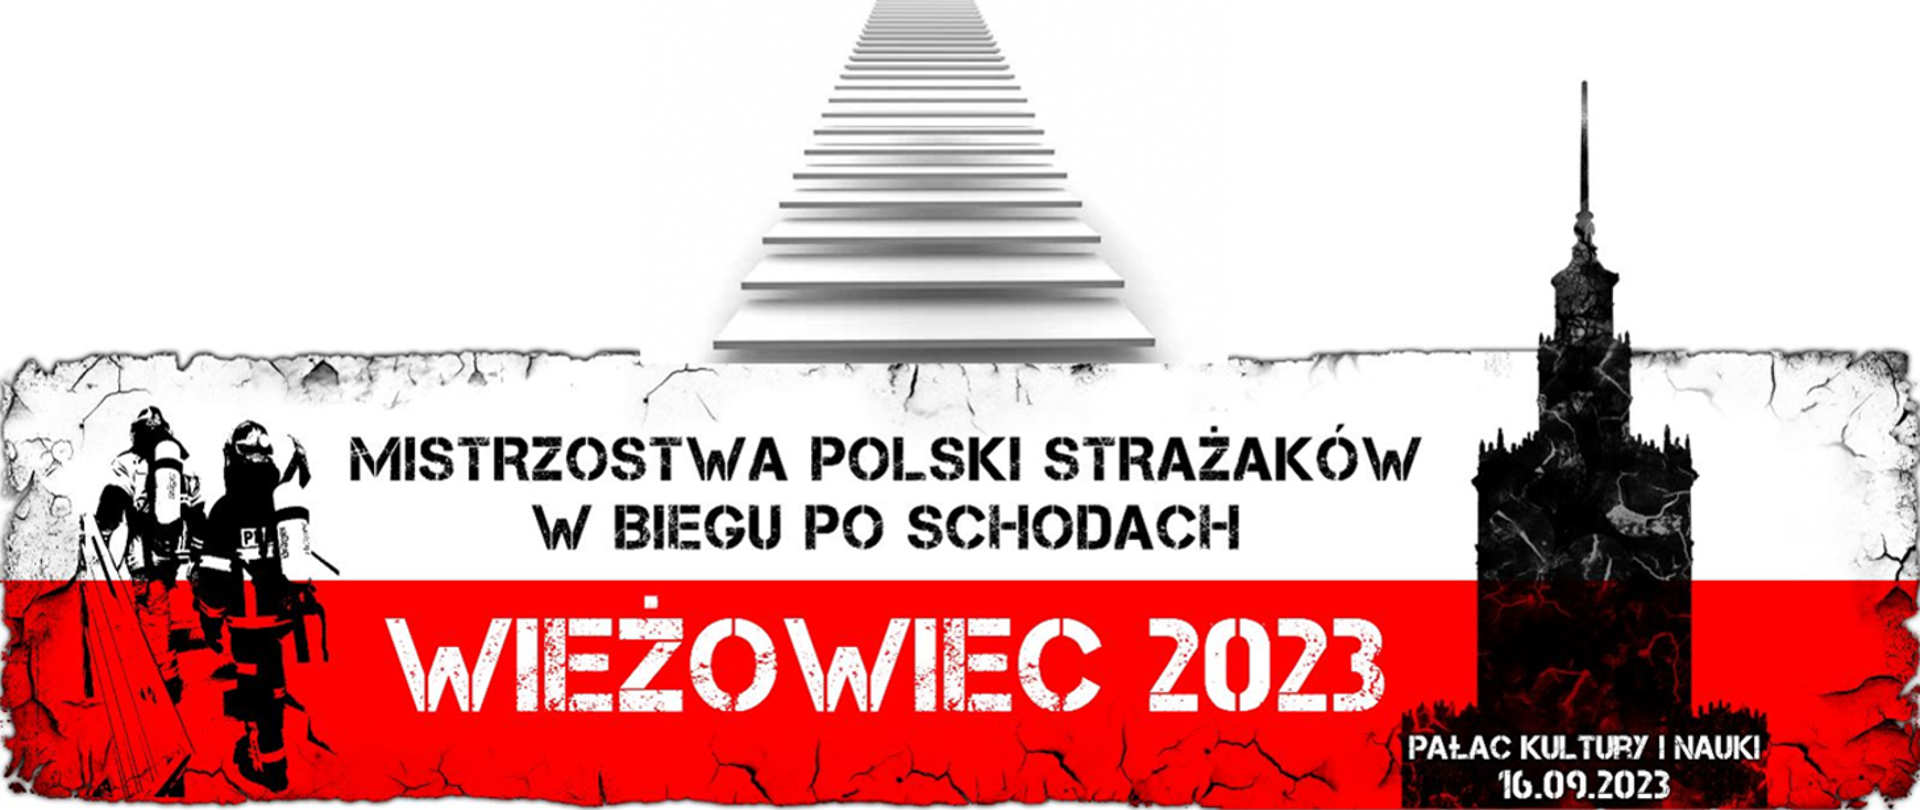 Mistrzostwa Polski w biegu po schodach 